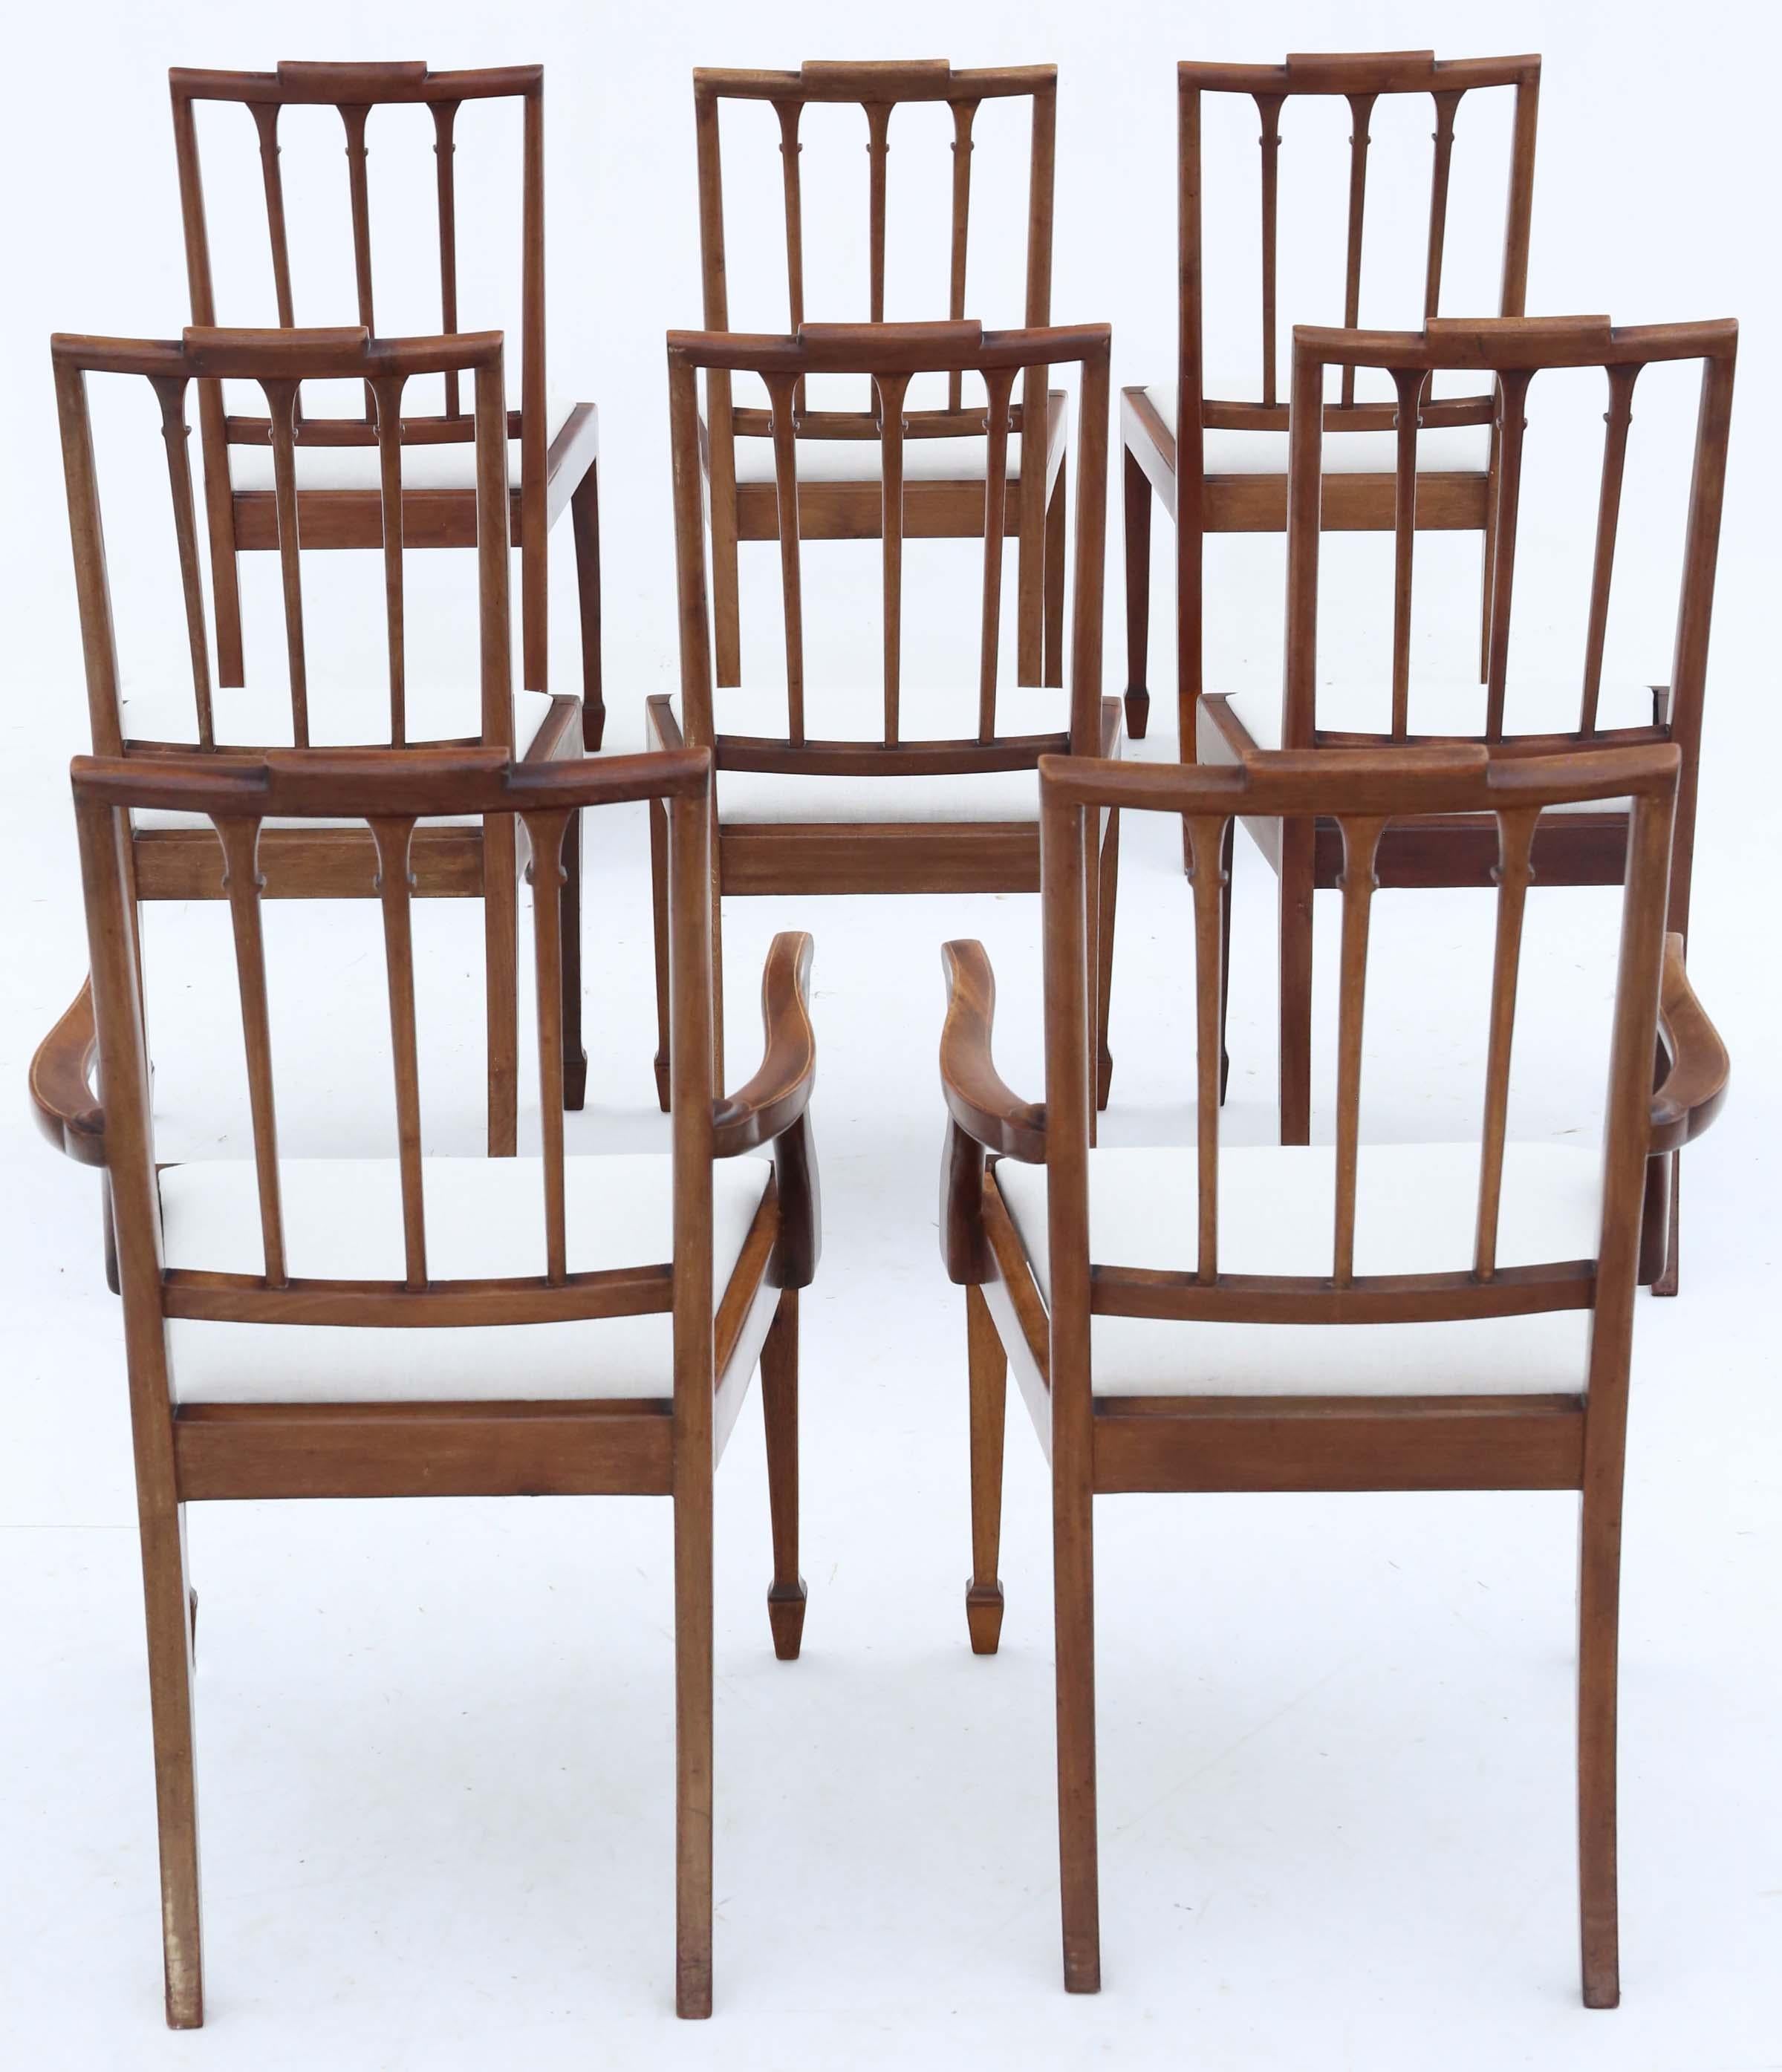 Découvrez le charme intemporel de cet ensemble exquis de 8 (6 + 2) chaises de salle à manger en acajou de style néo-géorgien, fabriquées au tournant du XXe siècle, vers 1900. Ces chaises incarnent l'élégance de l'époque géorgienne grâce à leur